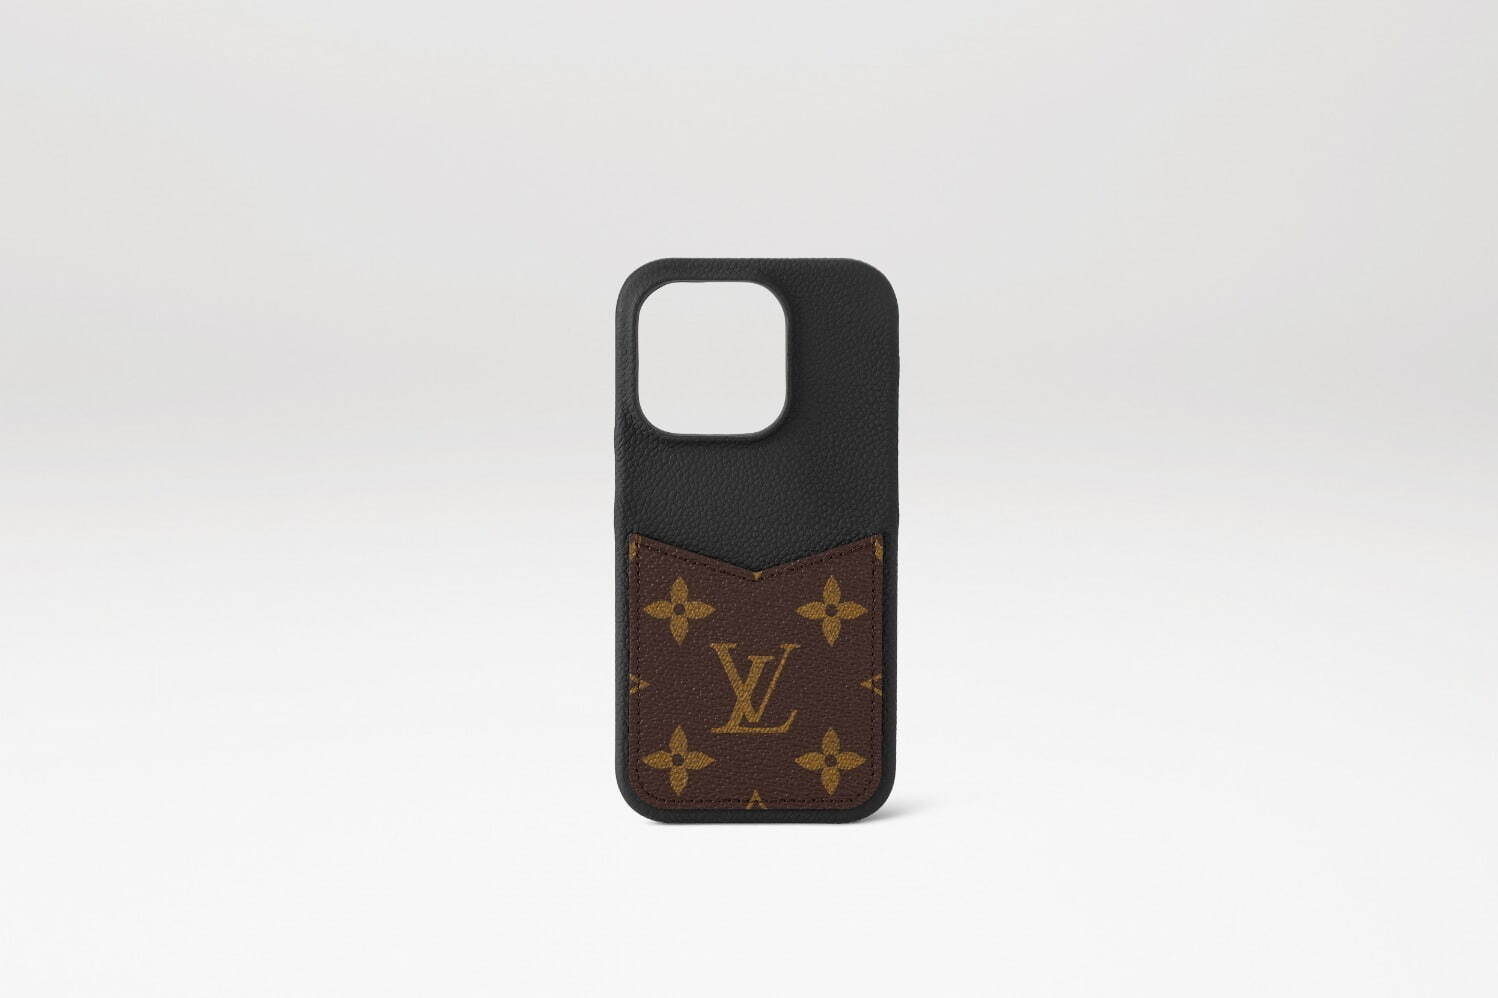 ルイ・ヴィトン“モノグラム・キャンバス”の新作iPhoneケース、カードも